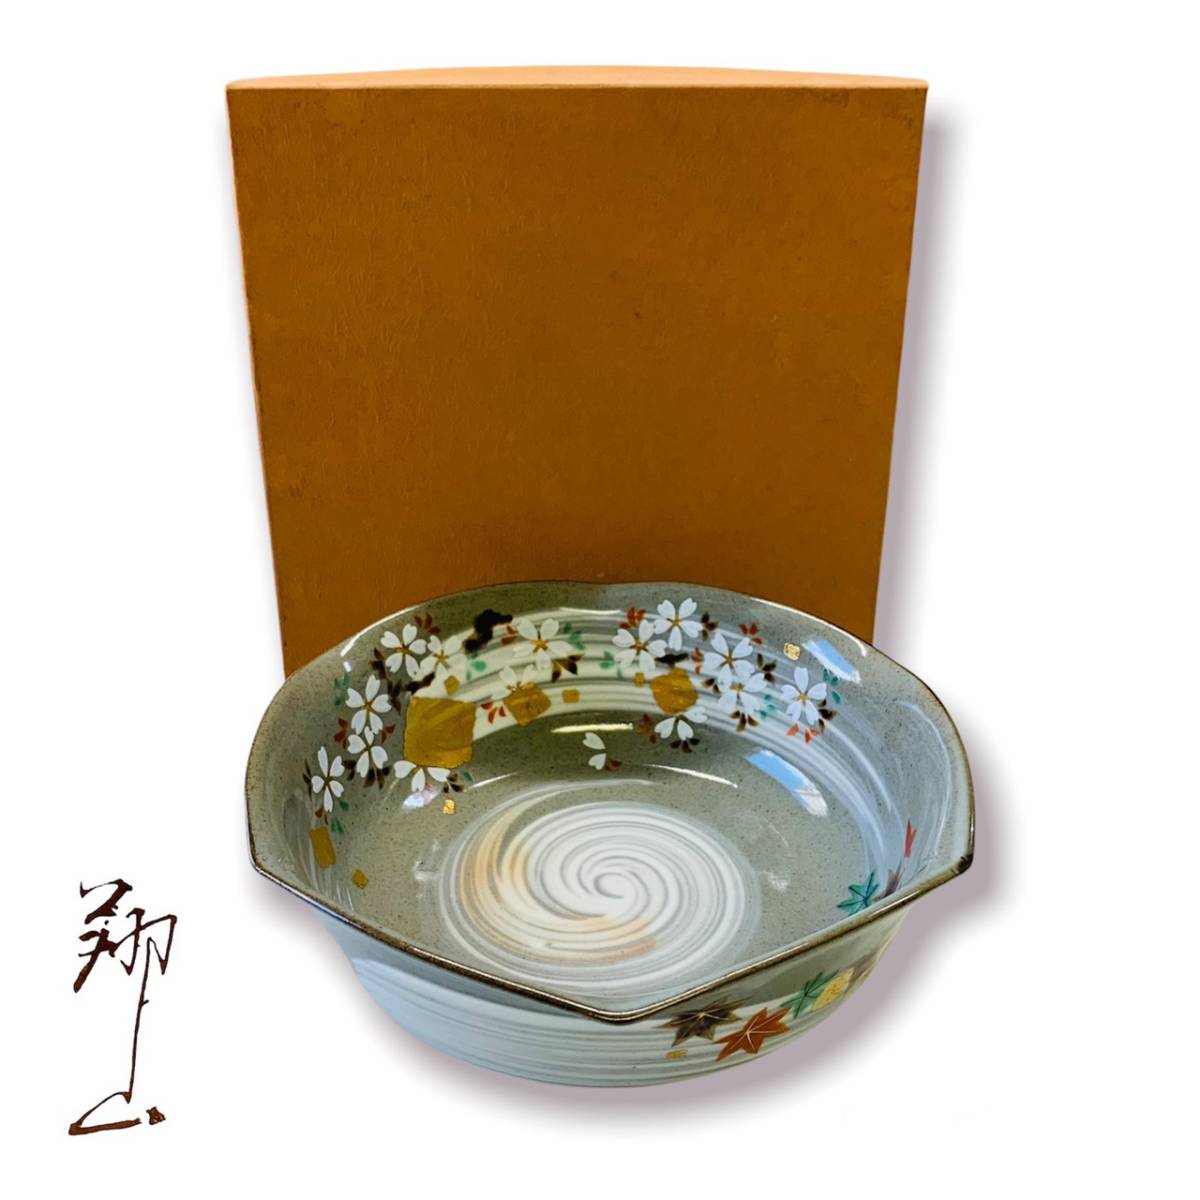 箱付】美濃焼翔山窯粉引春秋菓子鉢6寸和食器商品细节| Yahoo! JAPAN